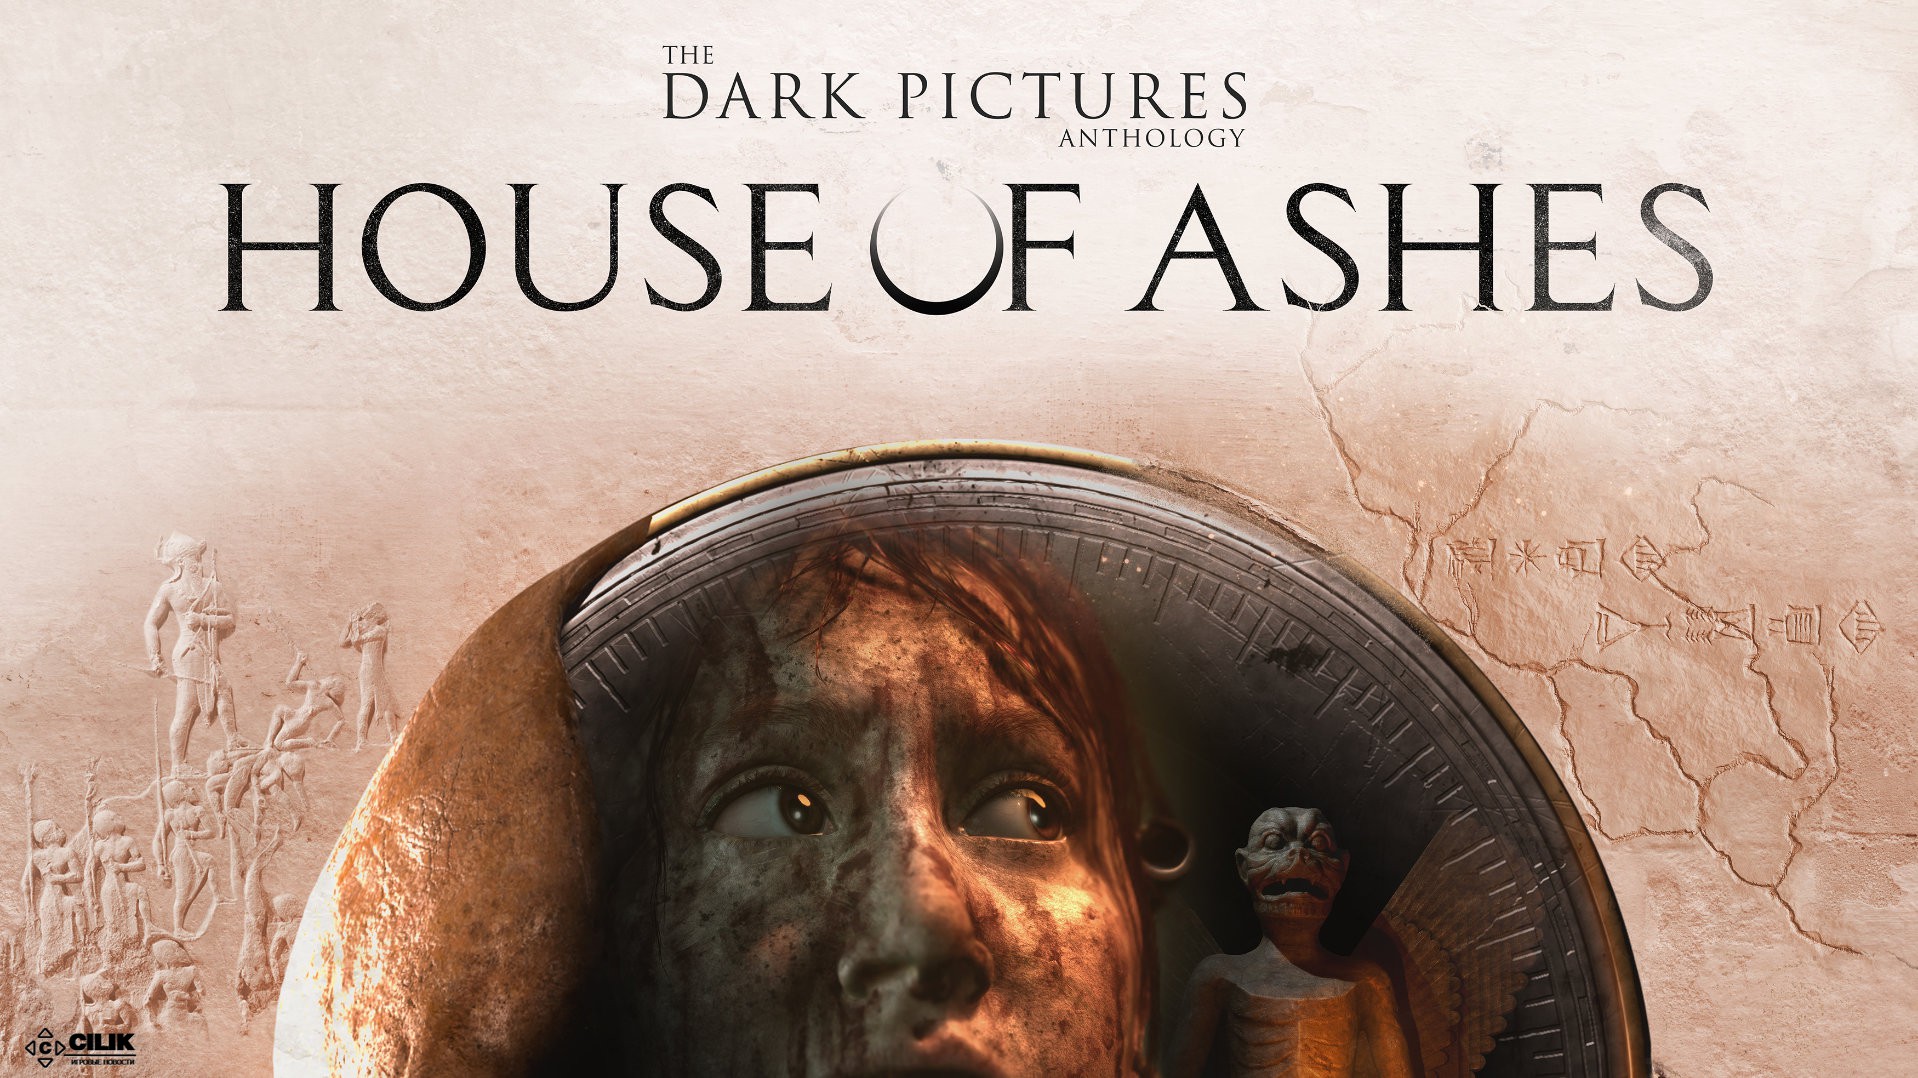 The dark pictures все игры. The Dark pictures Anthology: House of Ashes. House of Ashes ps4. The Dark pictures Anthology: House of Ashes обложка.